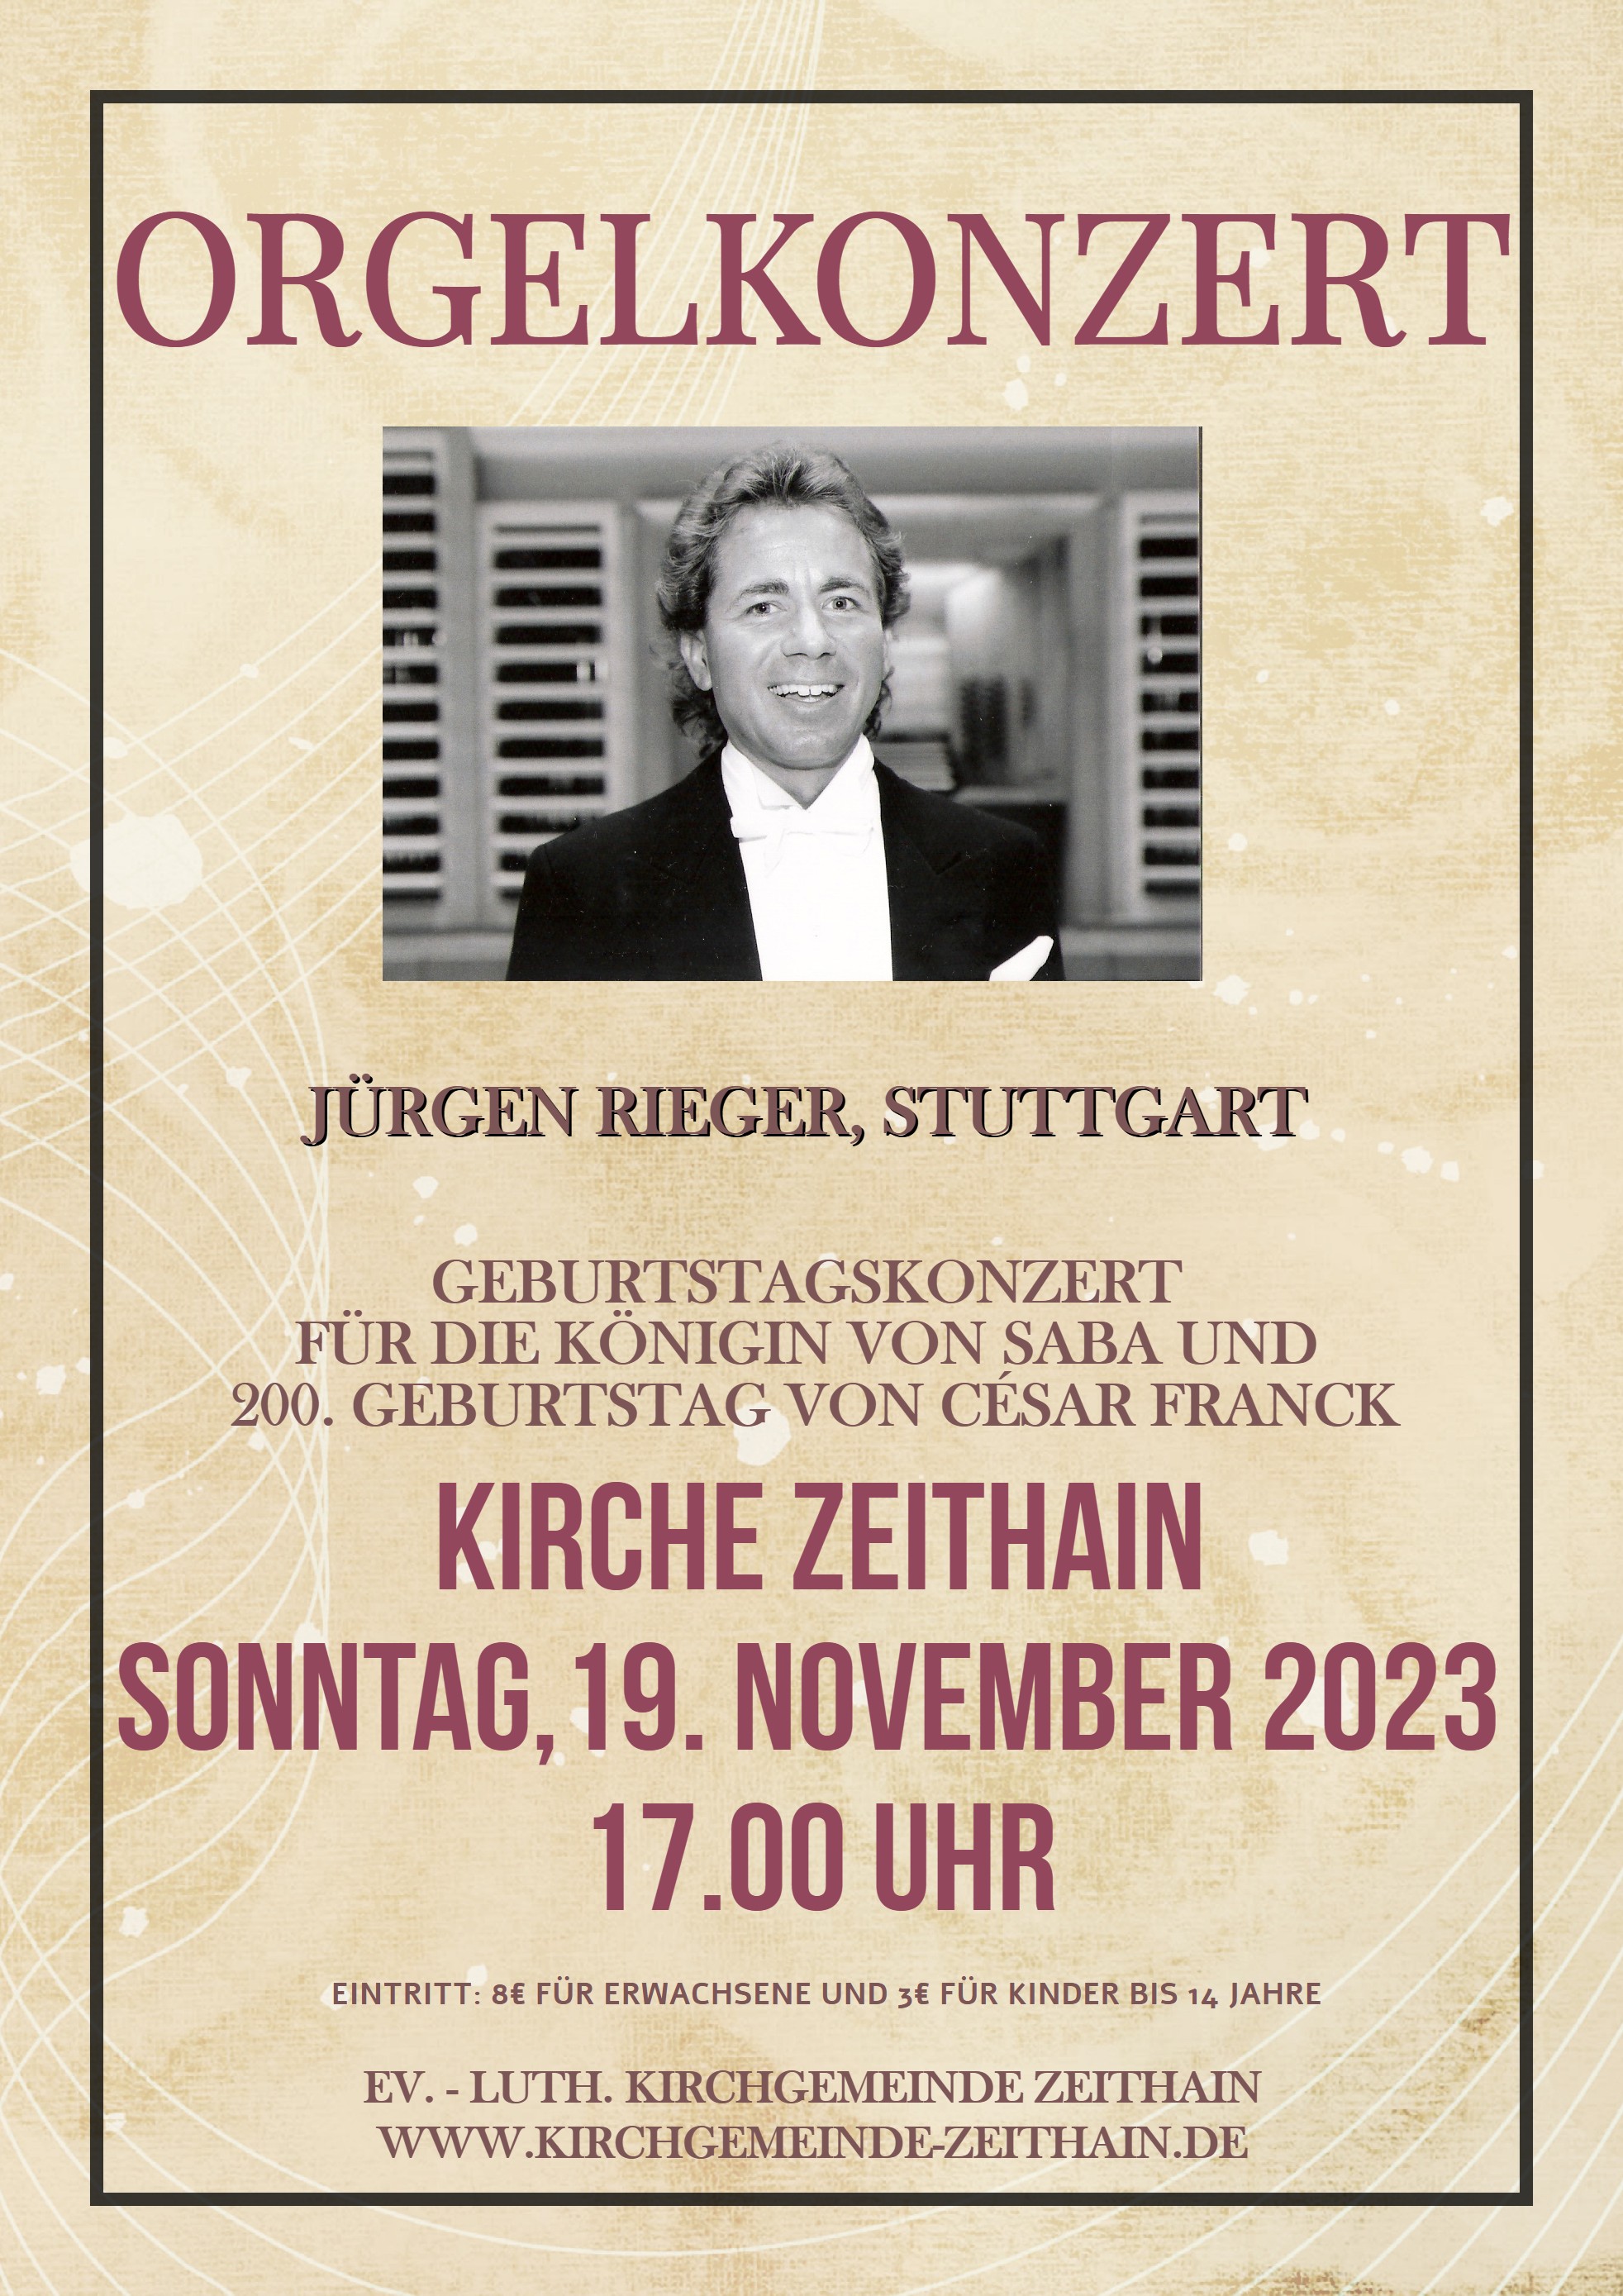 Orgelkonzert mit Jürgen Rieger am 19. November in Zeithain